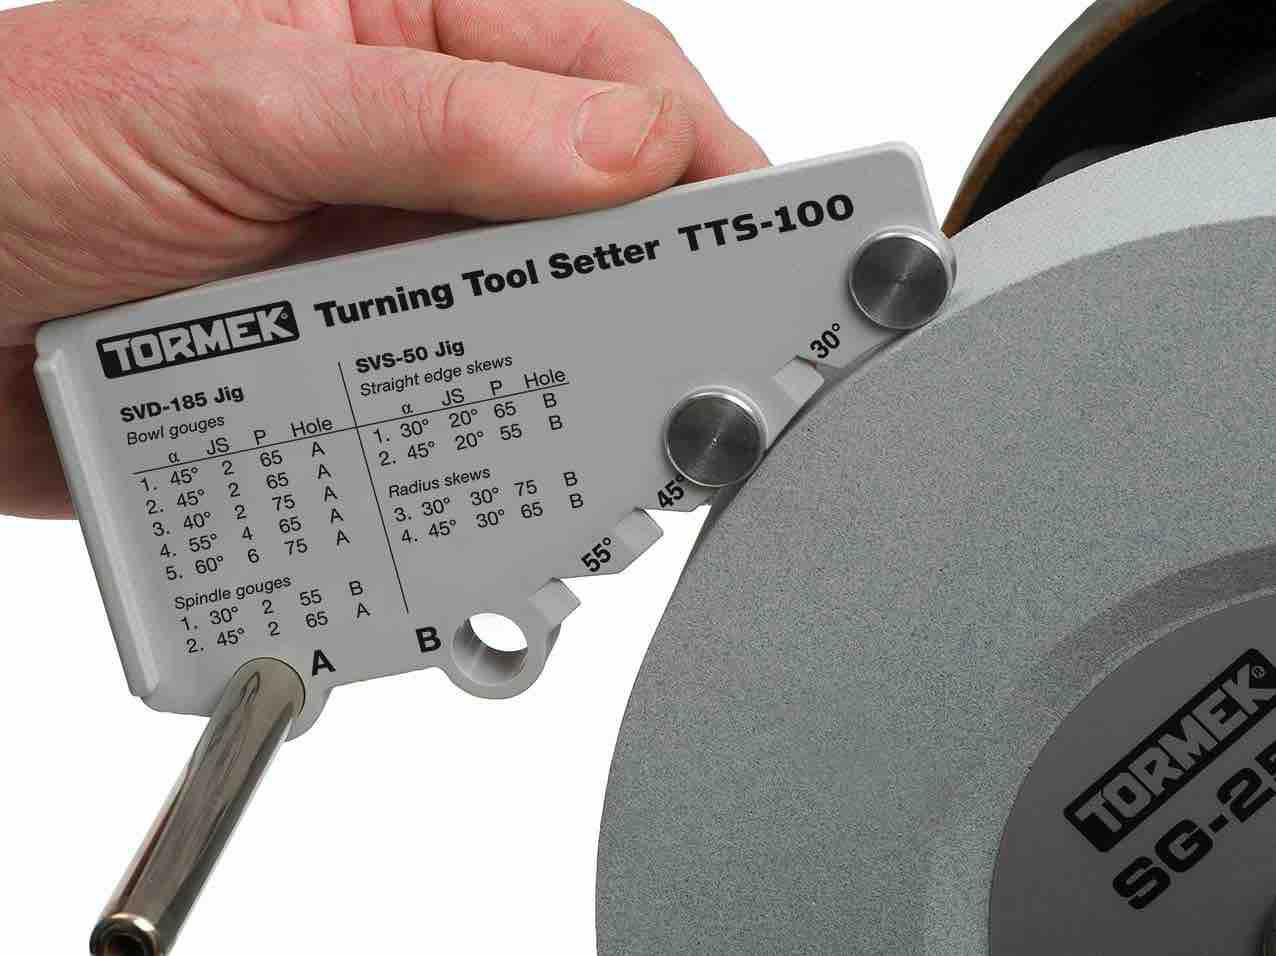 tormek TTS-100 Turning Tool Setter